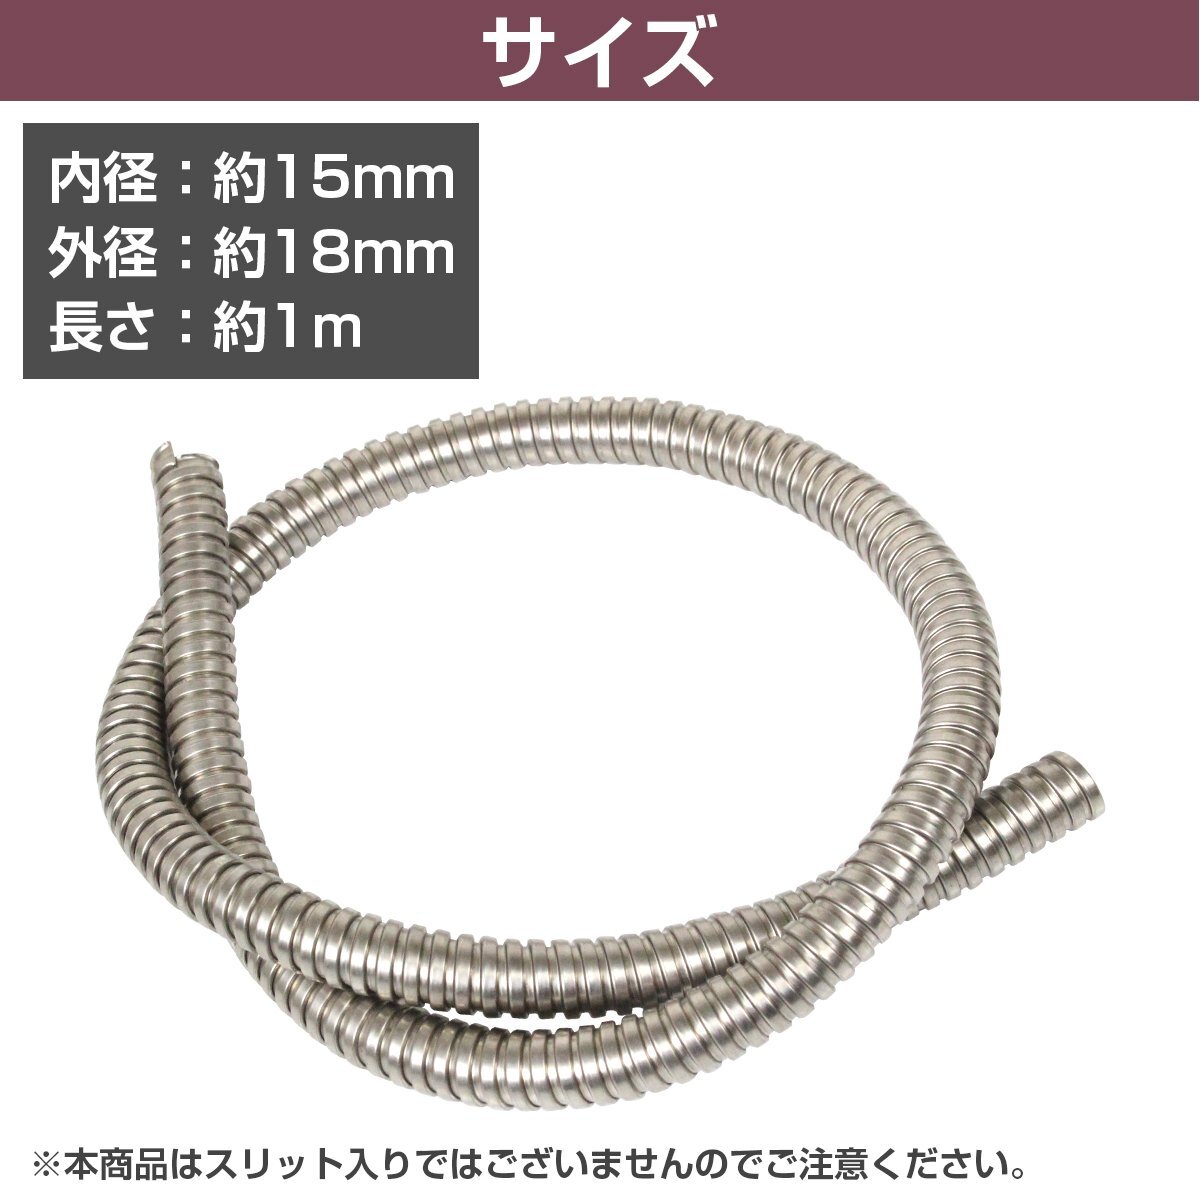  corrugate tube inside diameter 15mm 15φ length 1000mm 100cm 1m brake hose wiring code custom cover bike silver silver 